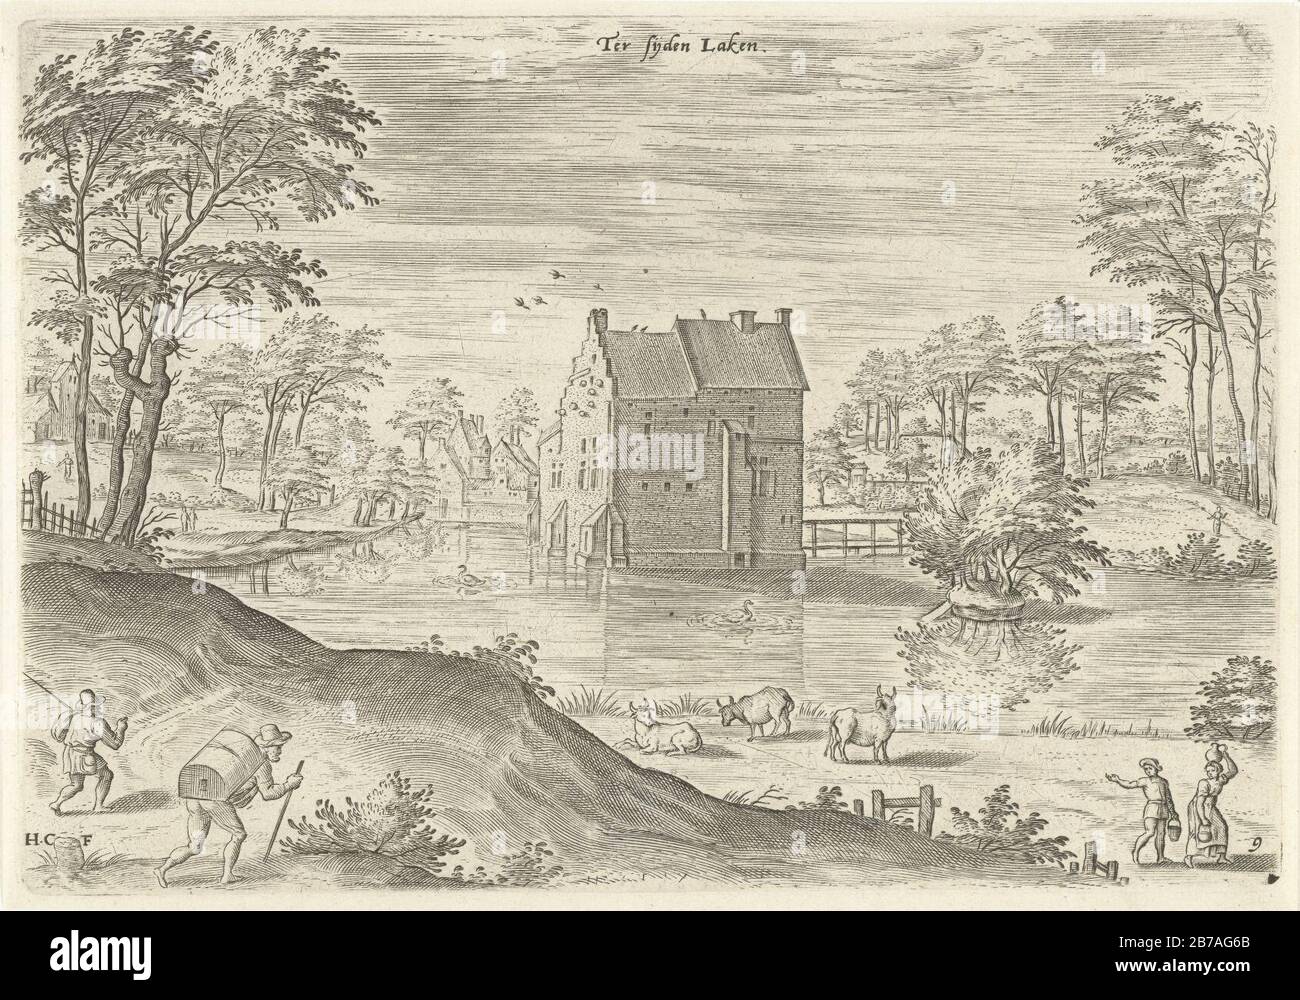 Gezicht op slot Coensborg te Laken, Hans Collaert (i), Naar Hans Bol, Jacob Grimmer, 1530 - 1580. Foto Stock